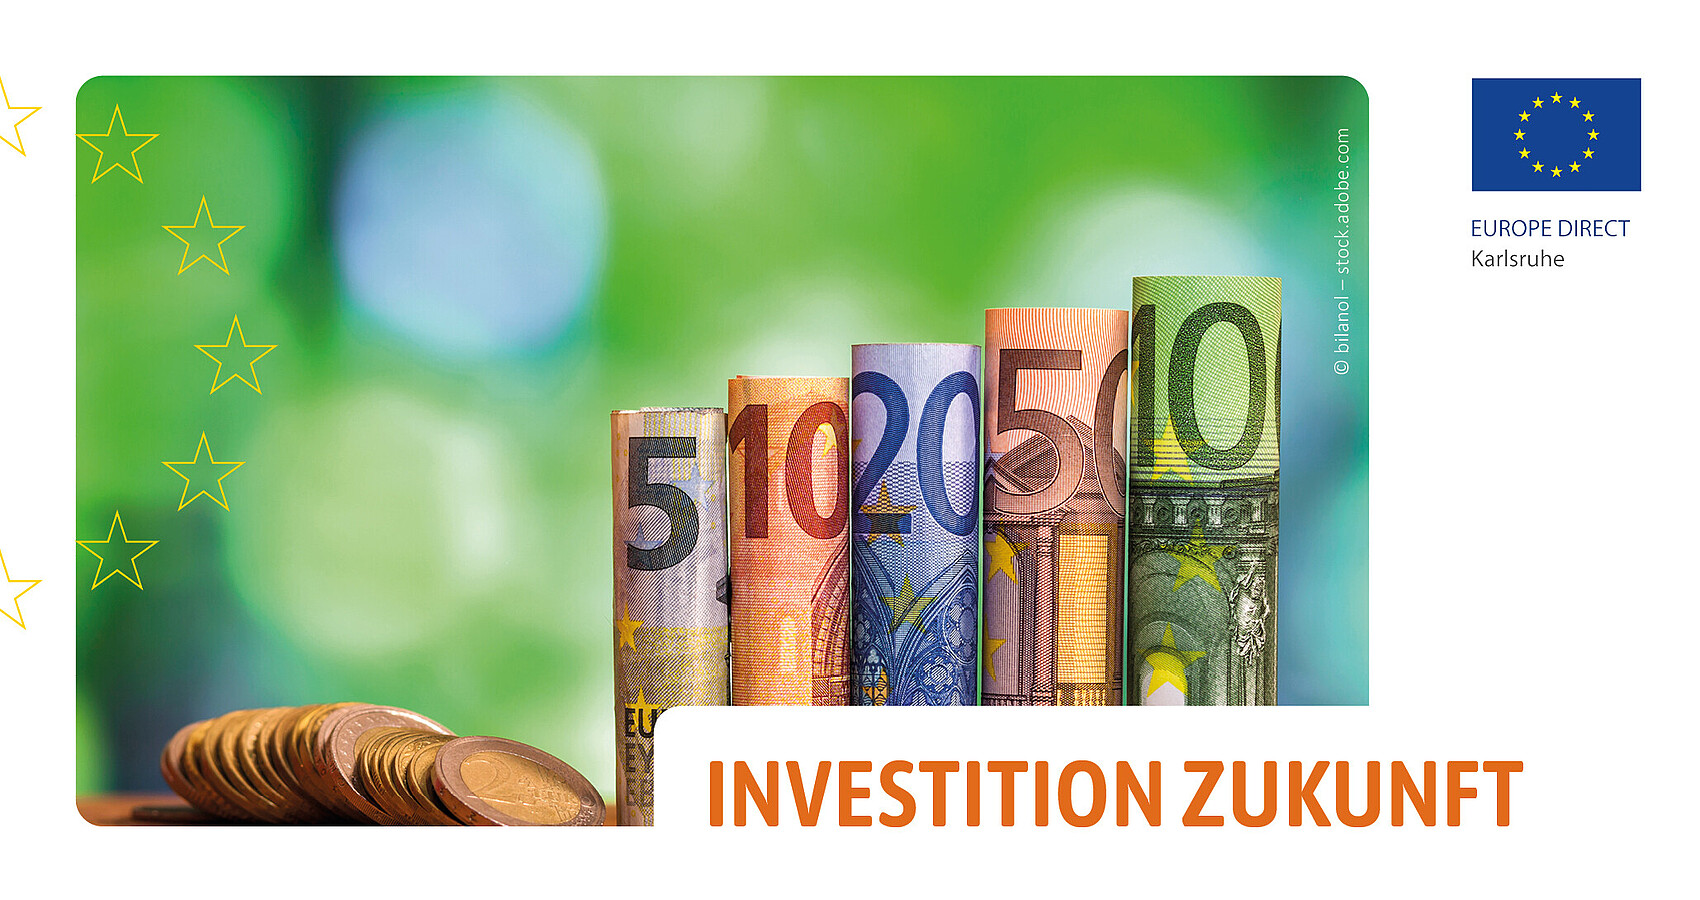 Das Bild zeigt mehrere Euromünzen sowie je einen 5 bis 100 Euroscheine vor einem grünen Hintergrund. Auf der linken Seite ist ein halber Sternenkreis und rechts das Logo des EUROPE DIRECT Karlsruhe abgebildet. Unten rechts steht in orangenen Großbuchstaben „Investition Zukunft“.